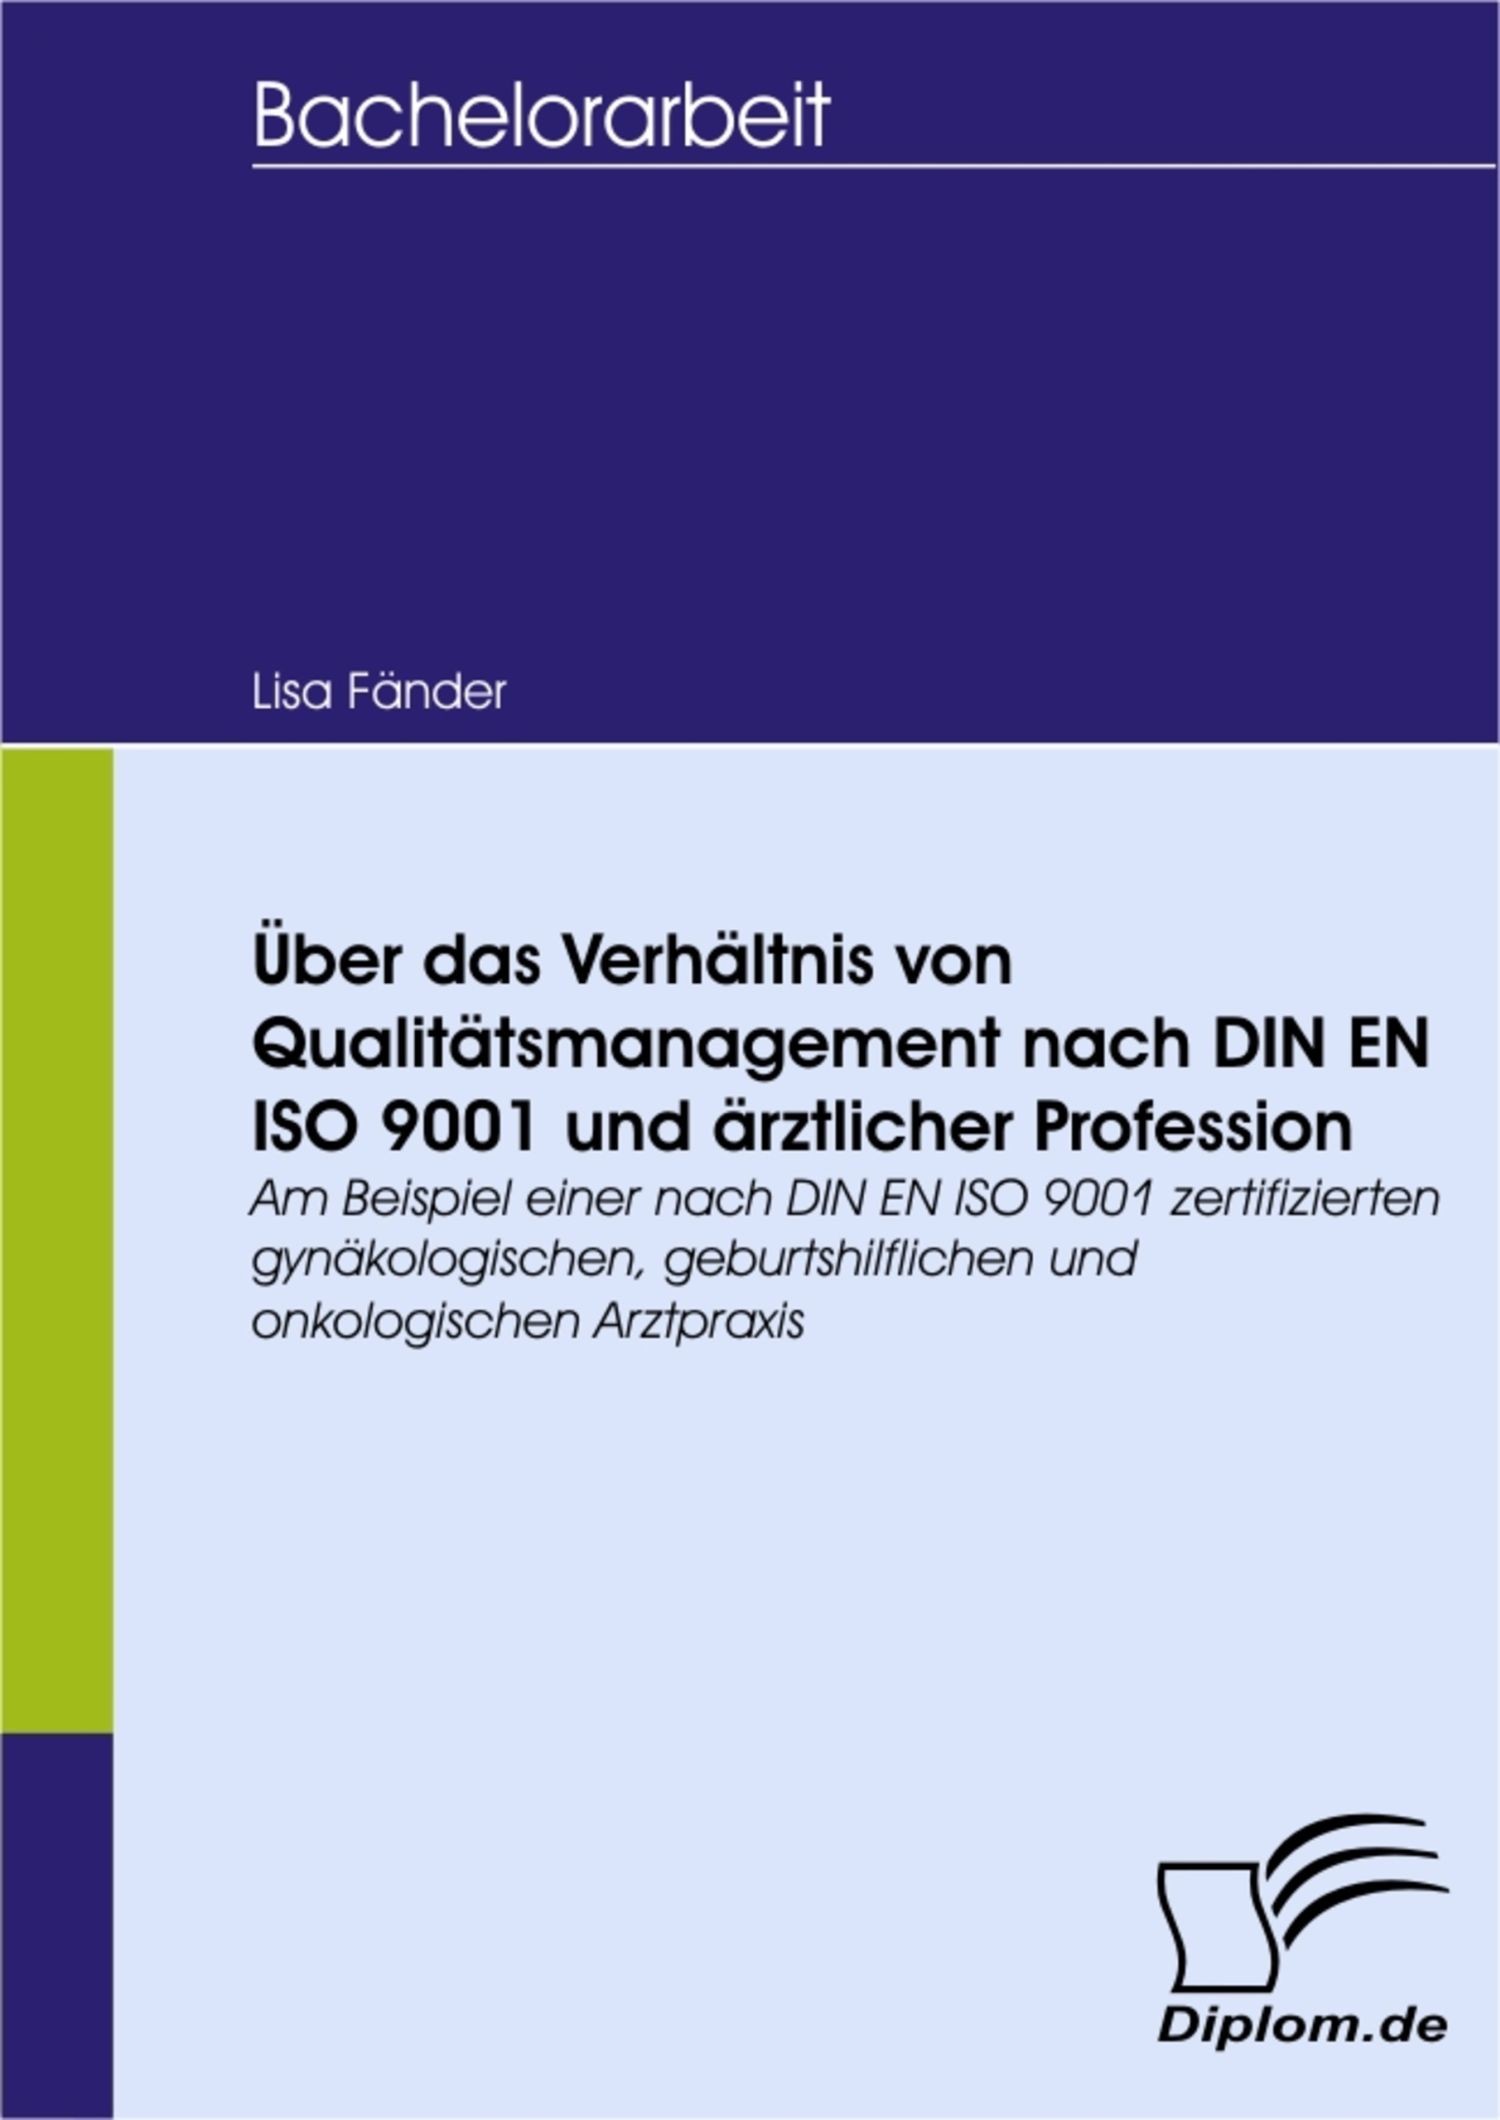 Über das Verhältnis von Qualitätsmanagement nach DIN EN ISO 9001 und ärztlicher Profession